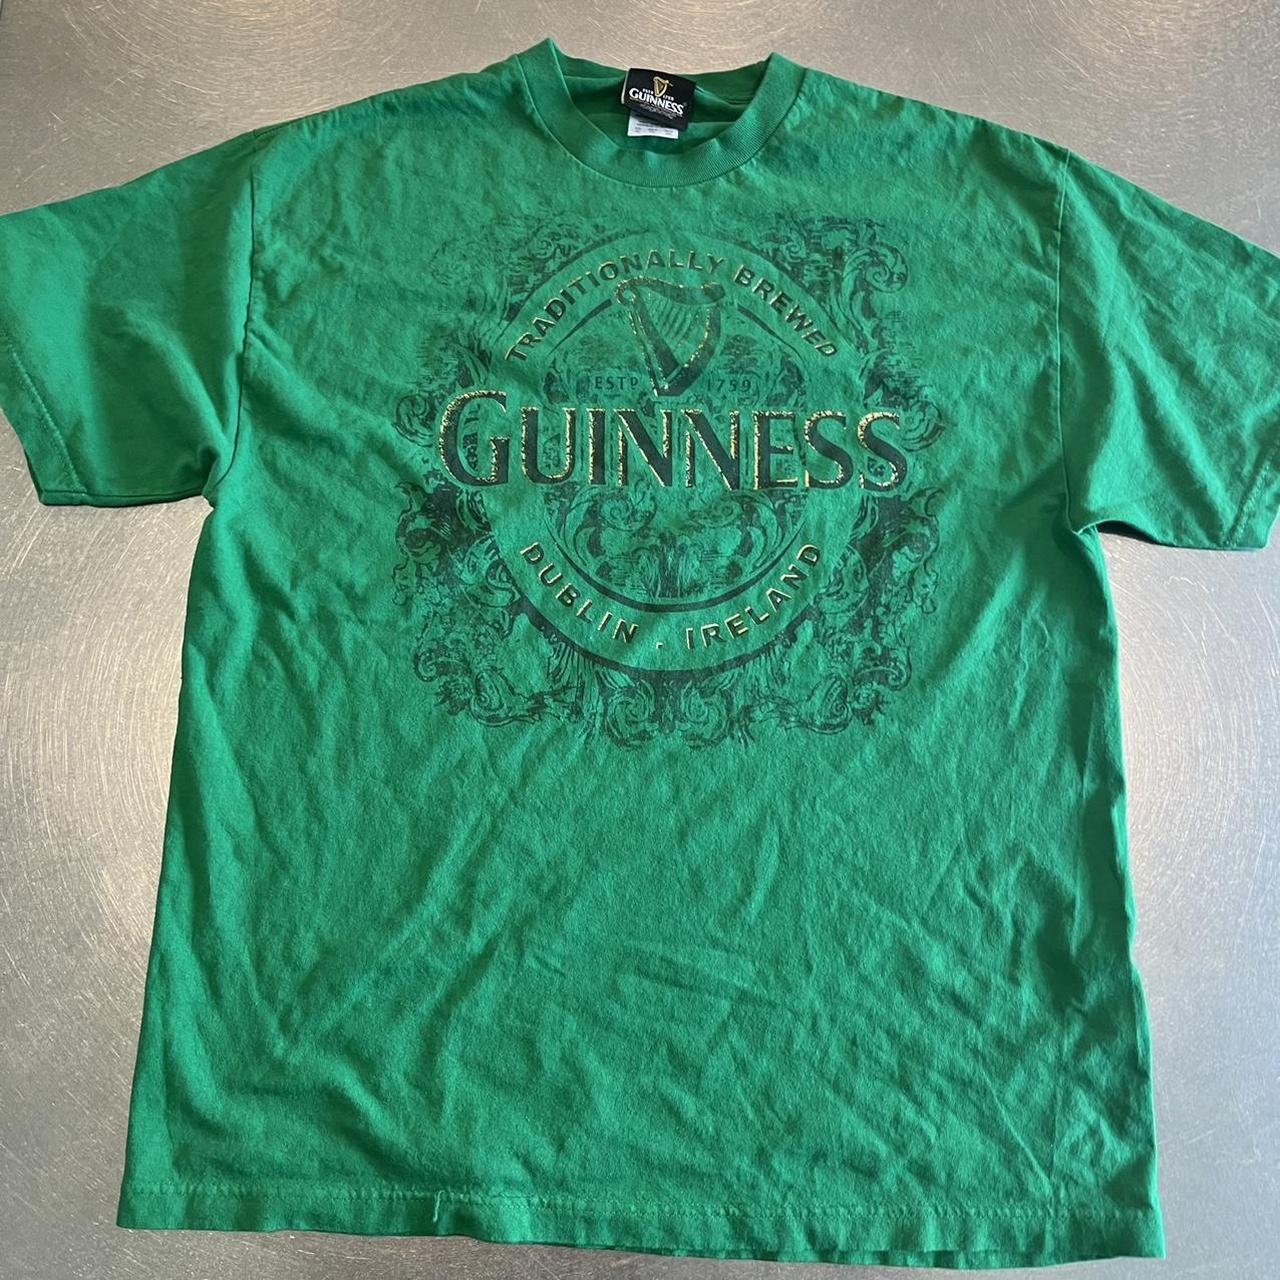 Guinness official merch - new never worn - no flaws... - Depop